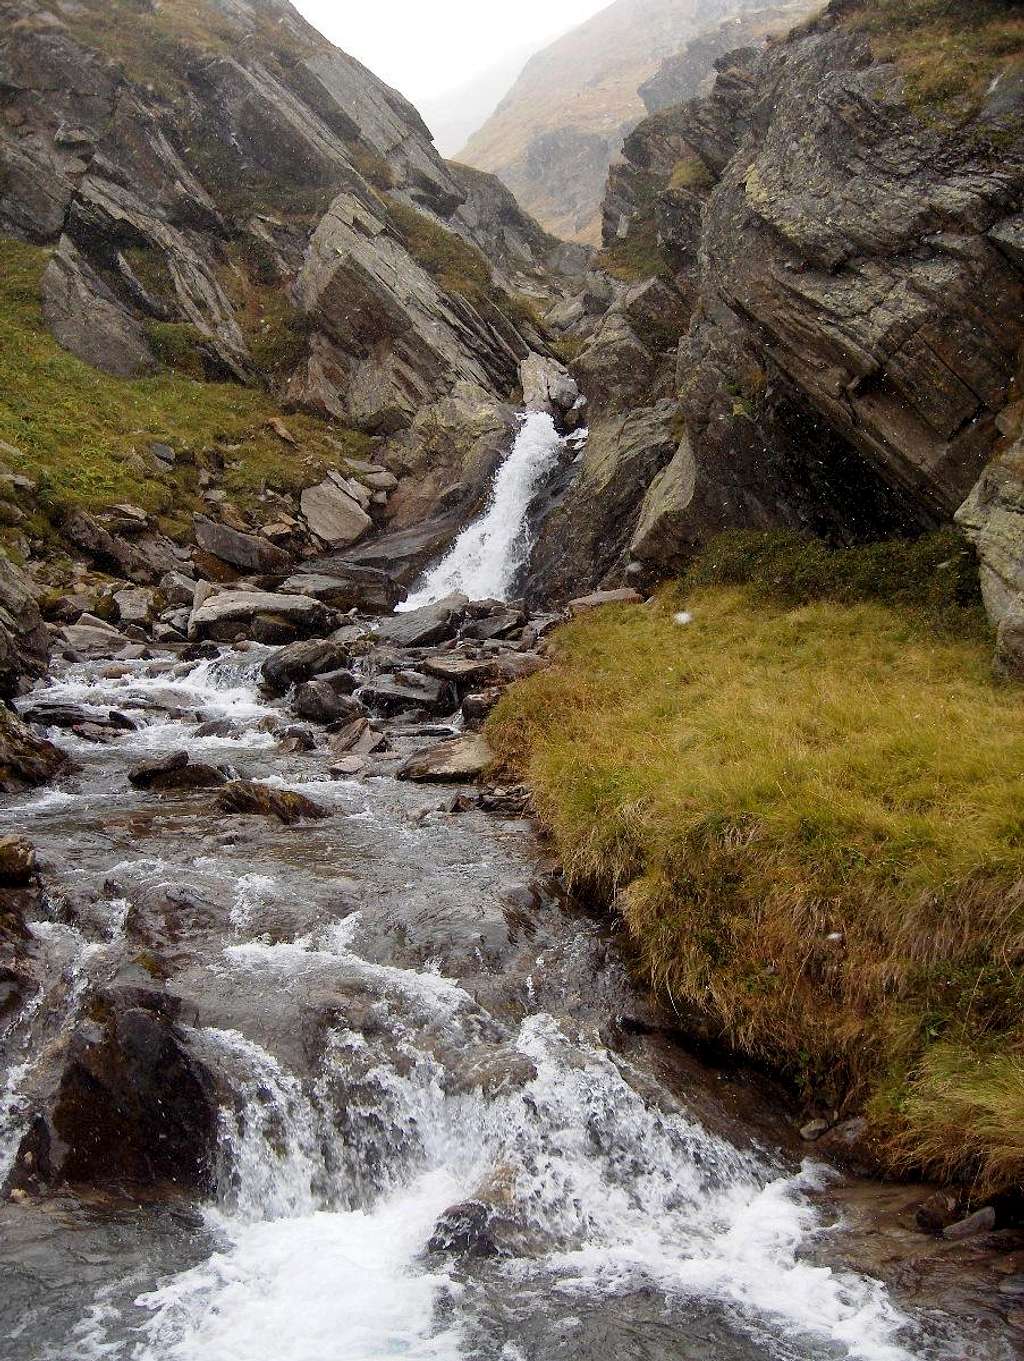 Alpine stream near the Lodner Hütte